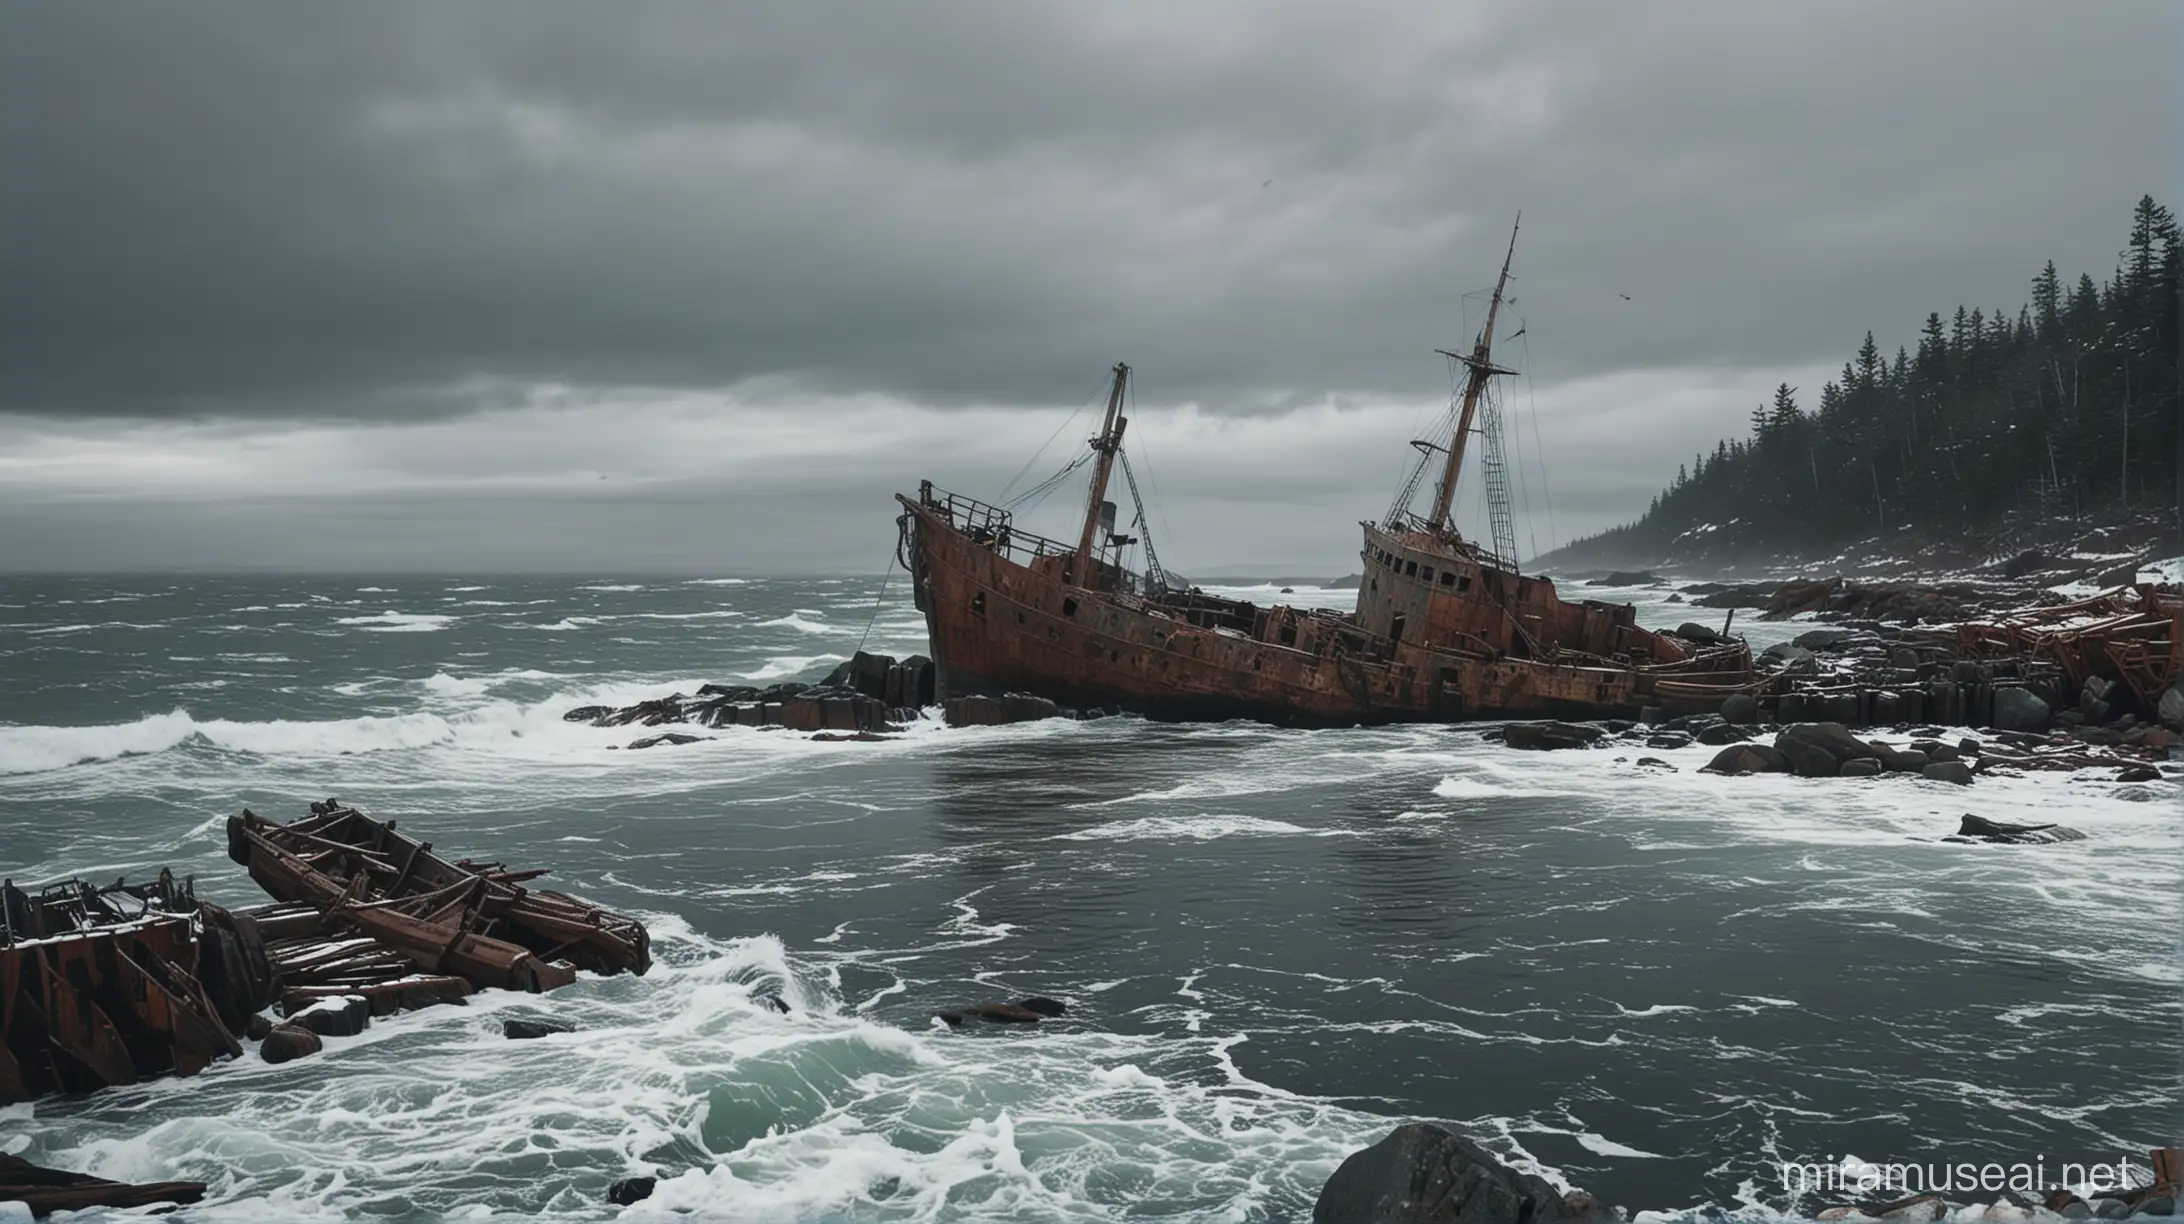 Dramatic Winter Scene Shipwreck on Rocky Shore in Nova Scotia